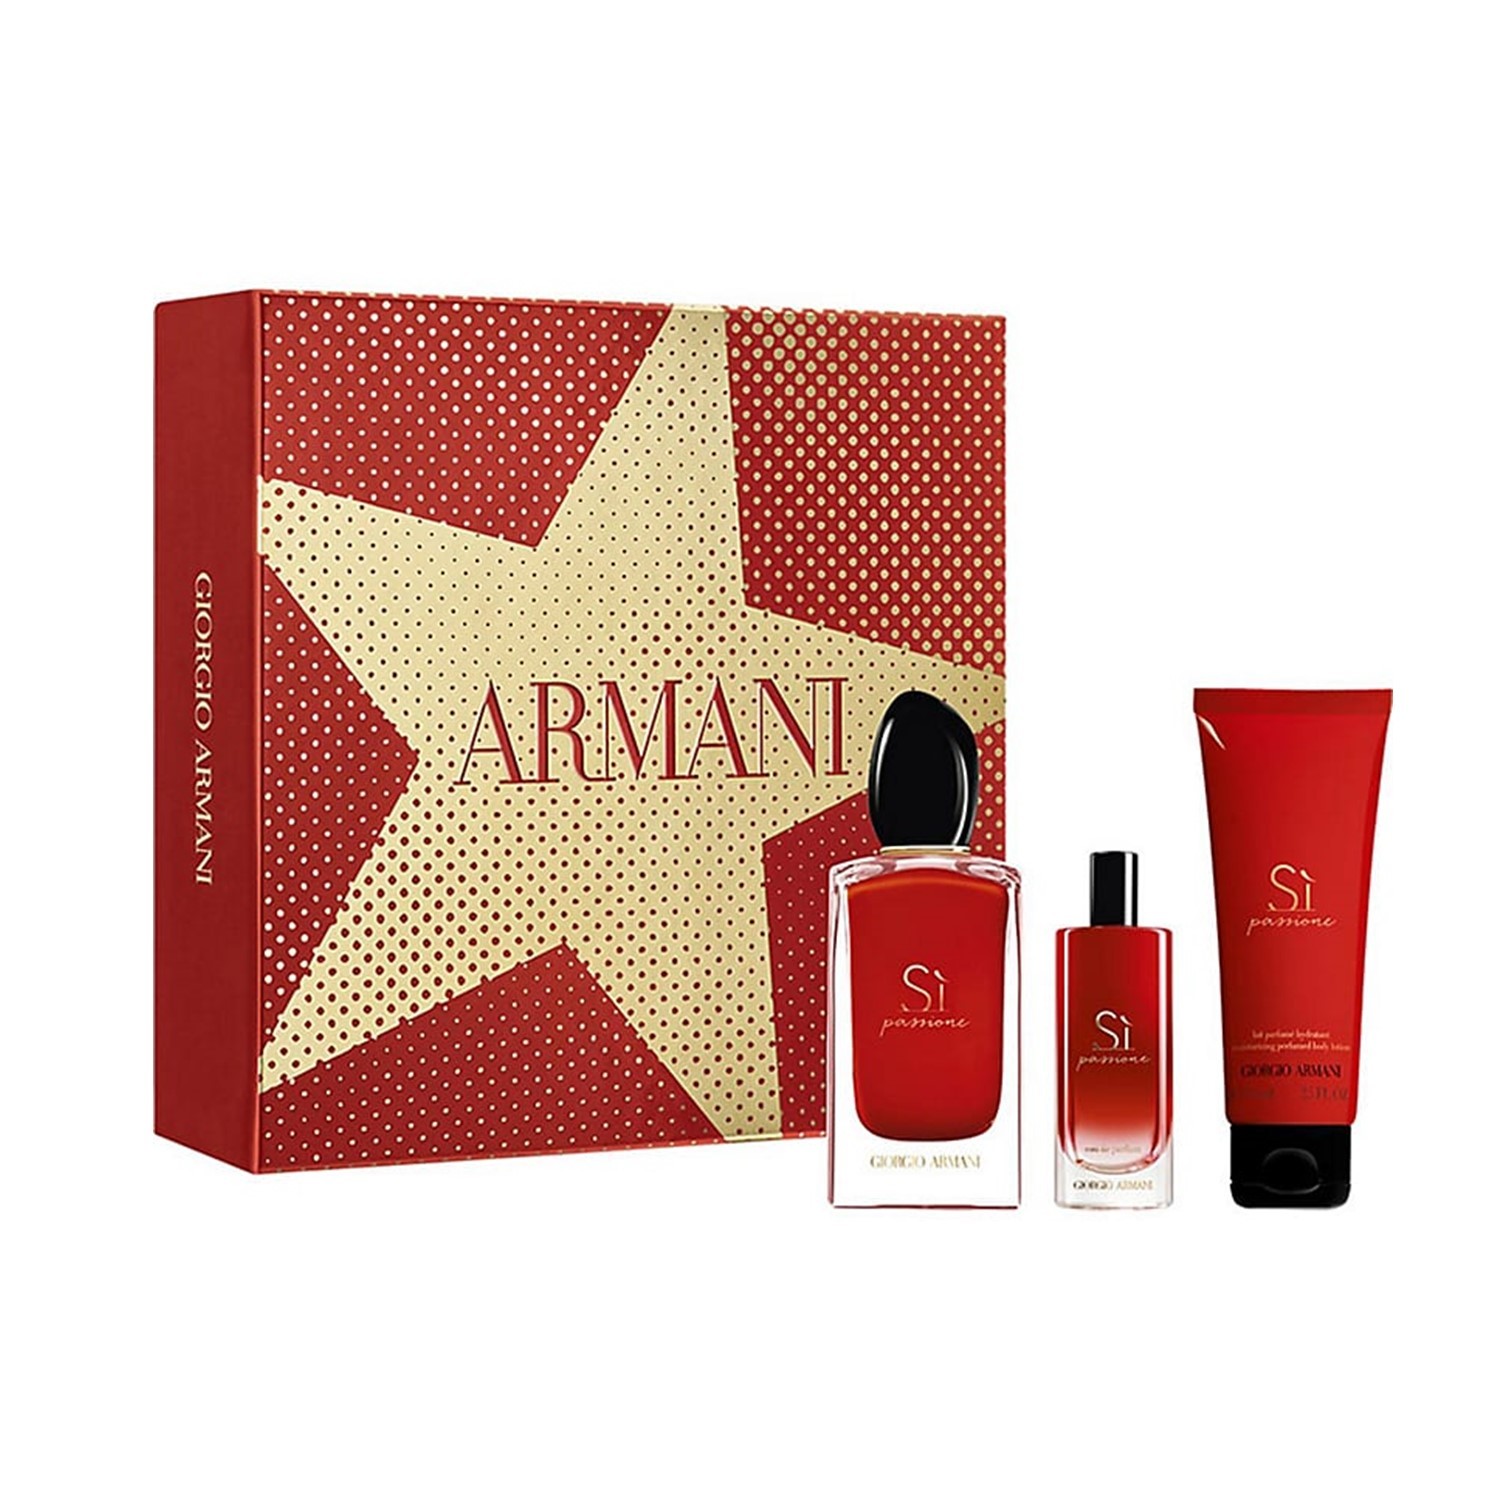 giorgio armani perfume travel set